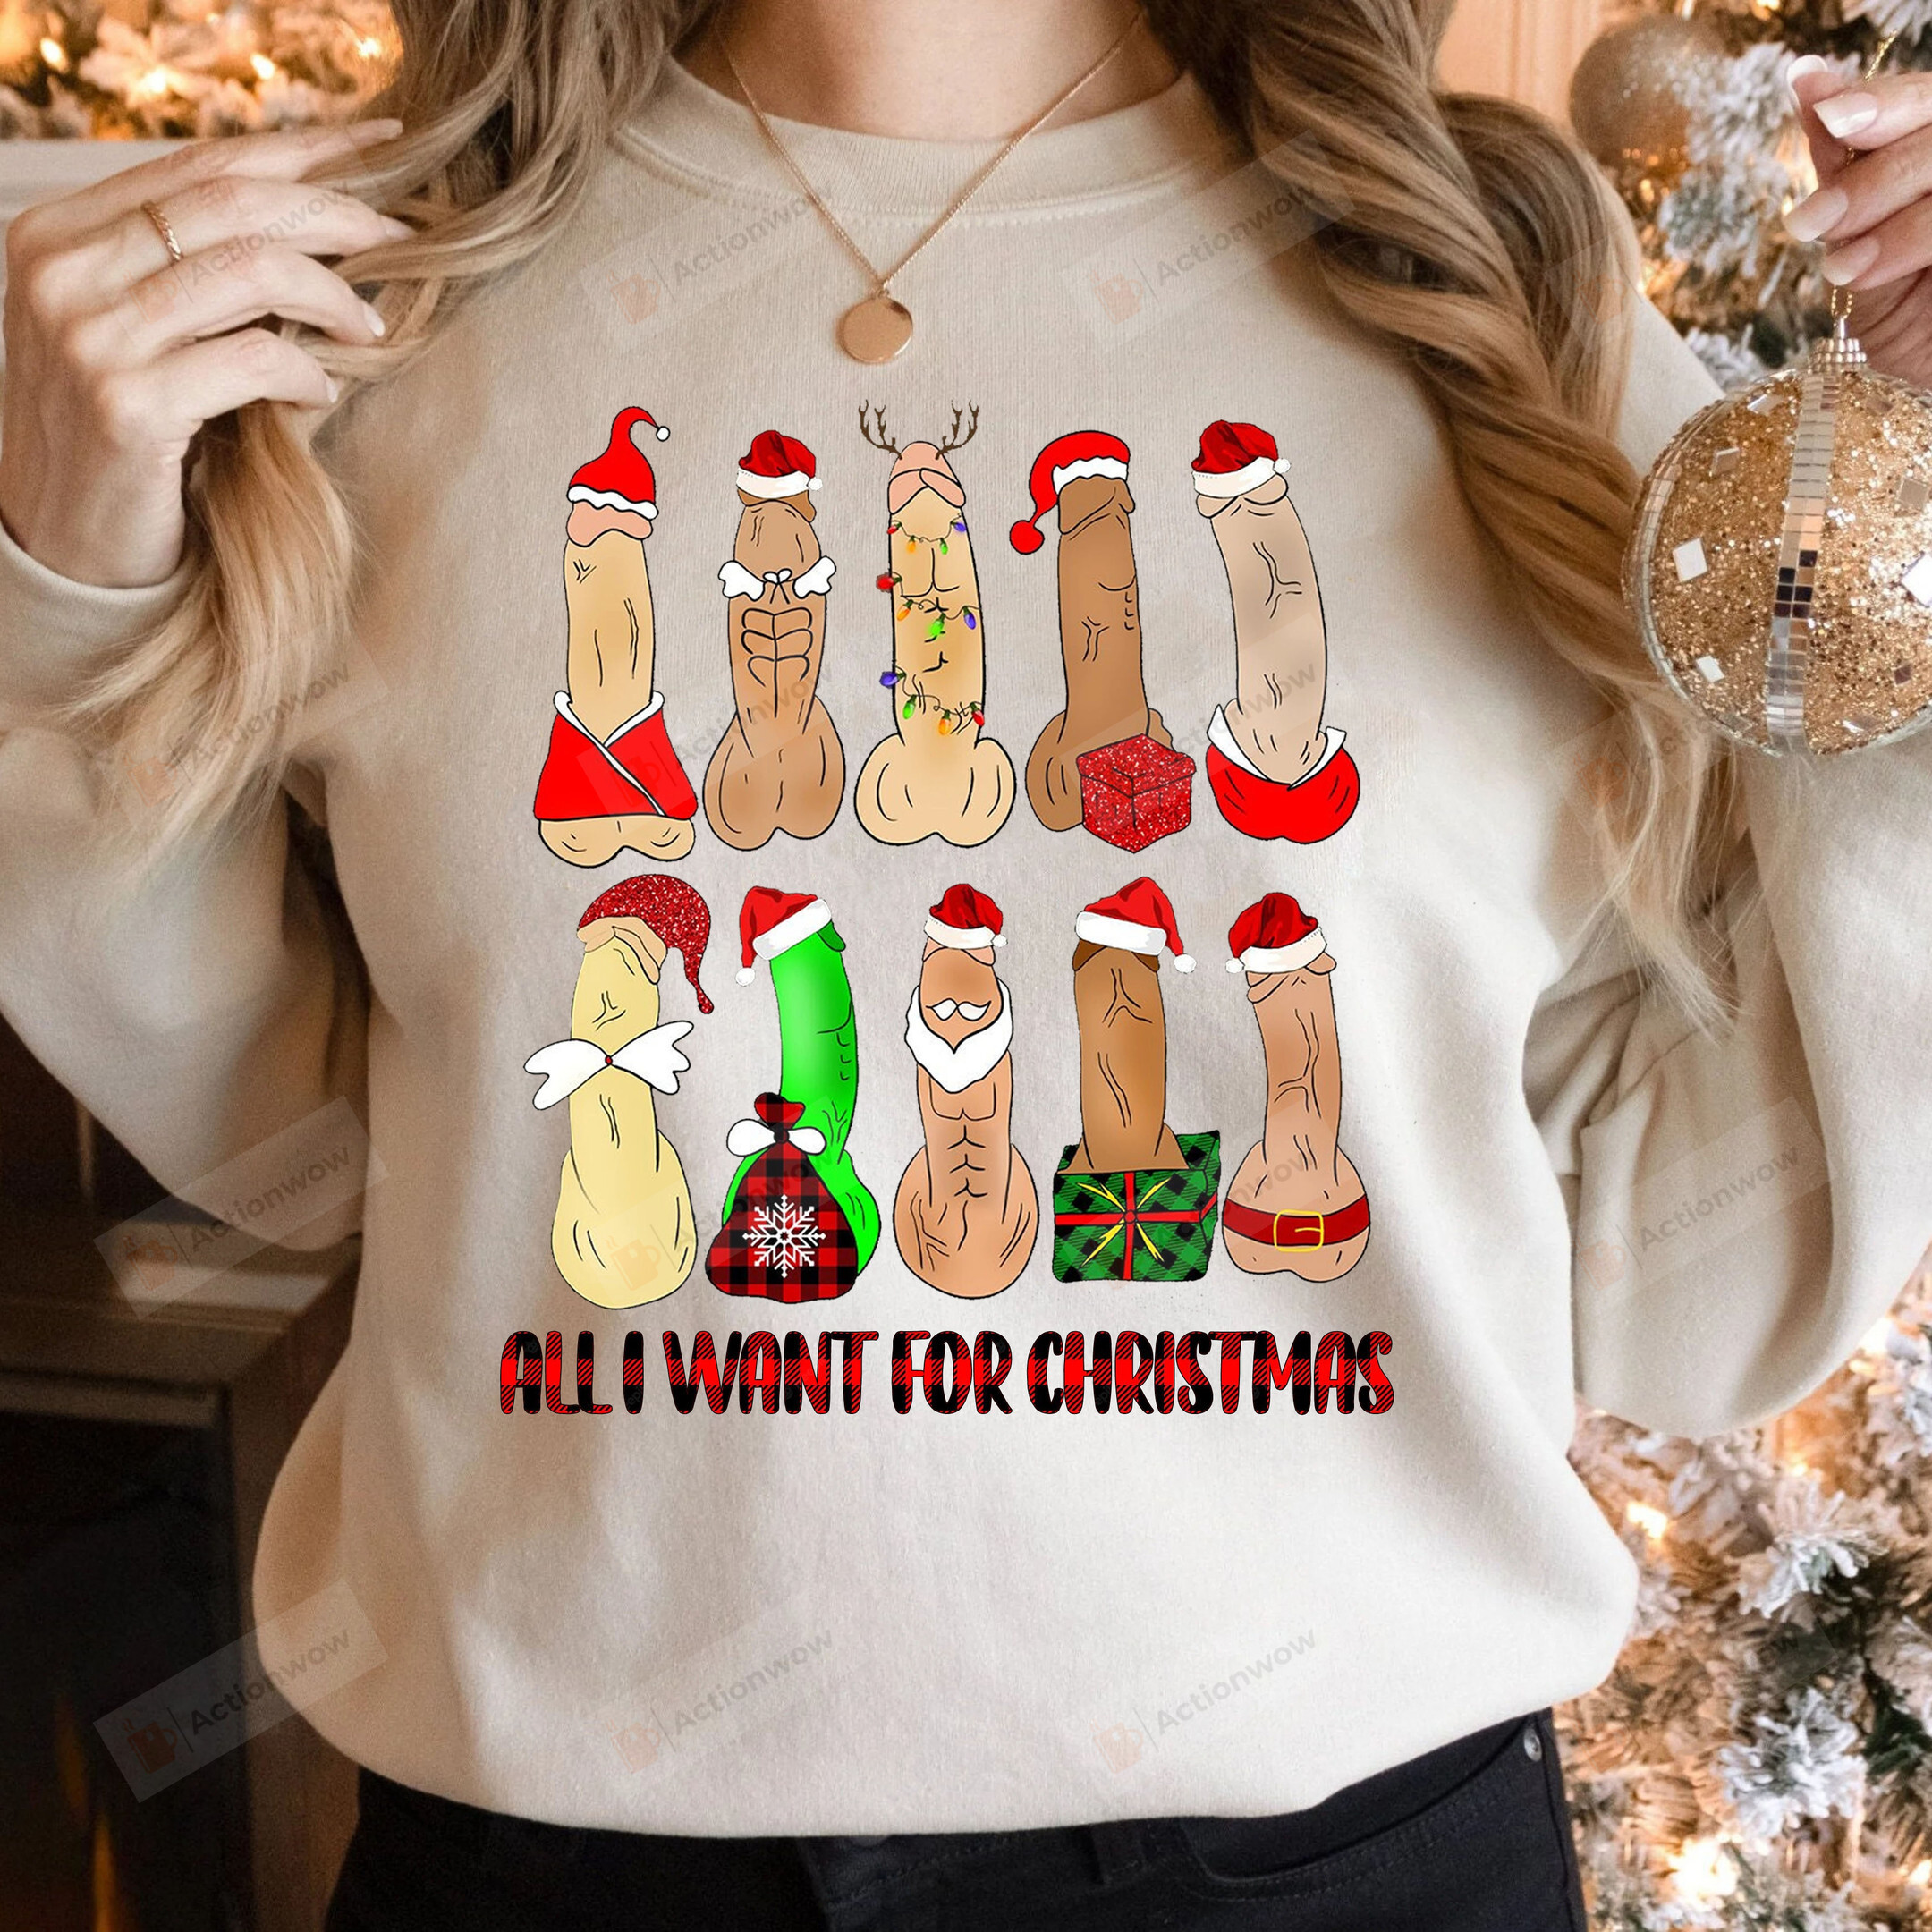 Dirty Christmas Sweater, All I Want For Christmas Dirty Santa Funny Shirts, Naughty Santa Sweatshirt, Naughty Christmas Xmas Party Sweatshirt, Funny Christmas Shirt